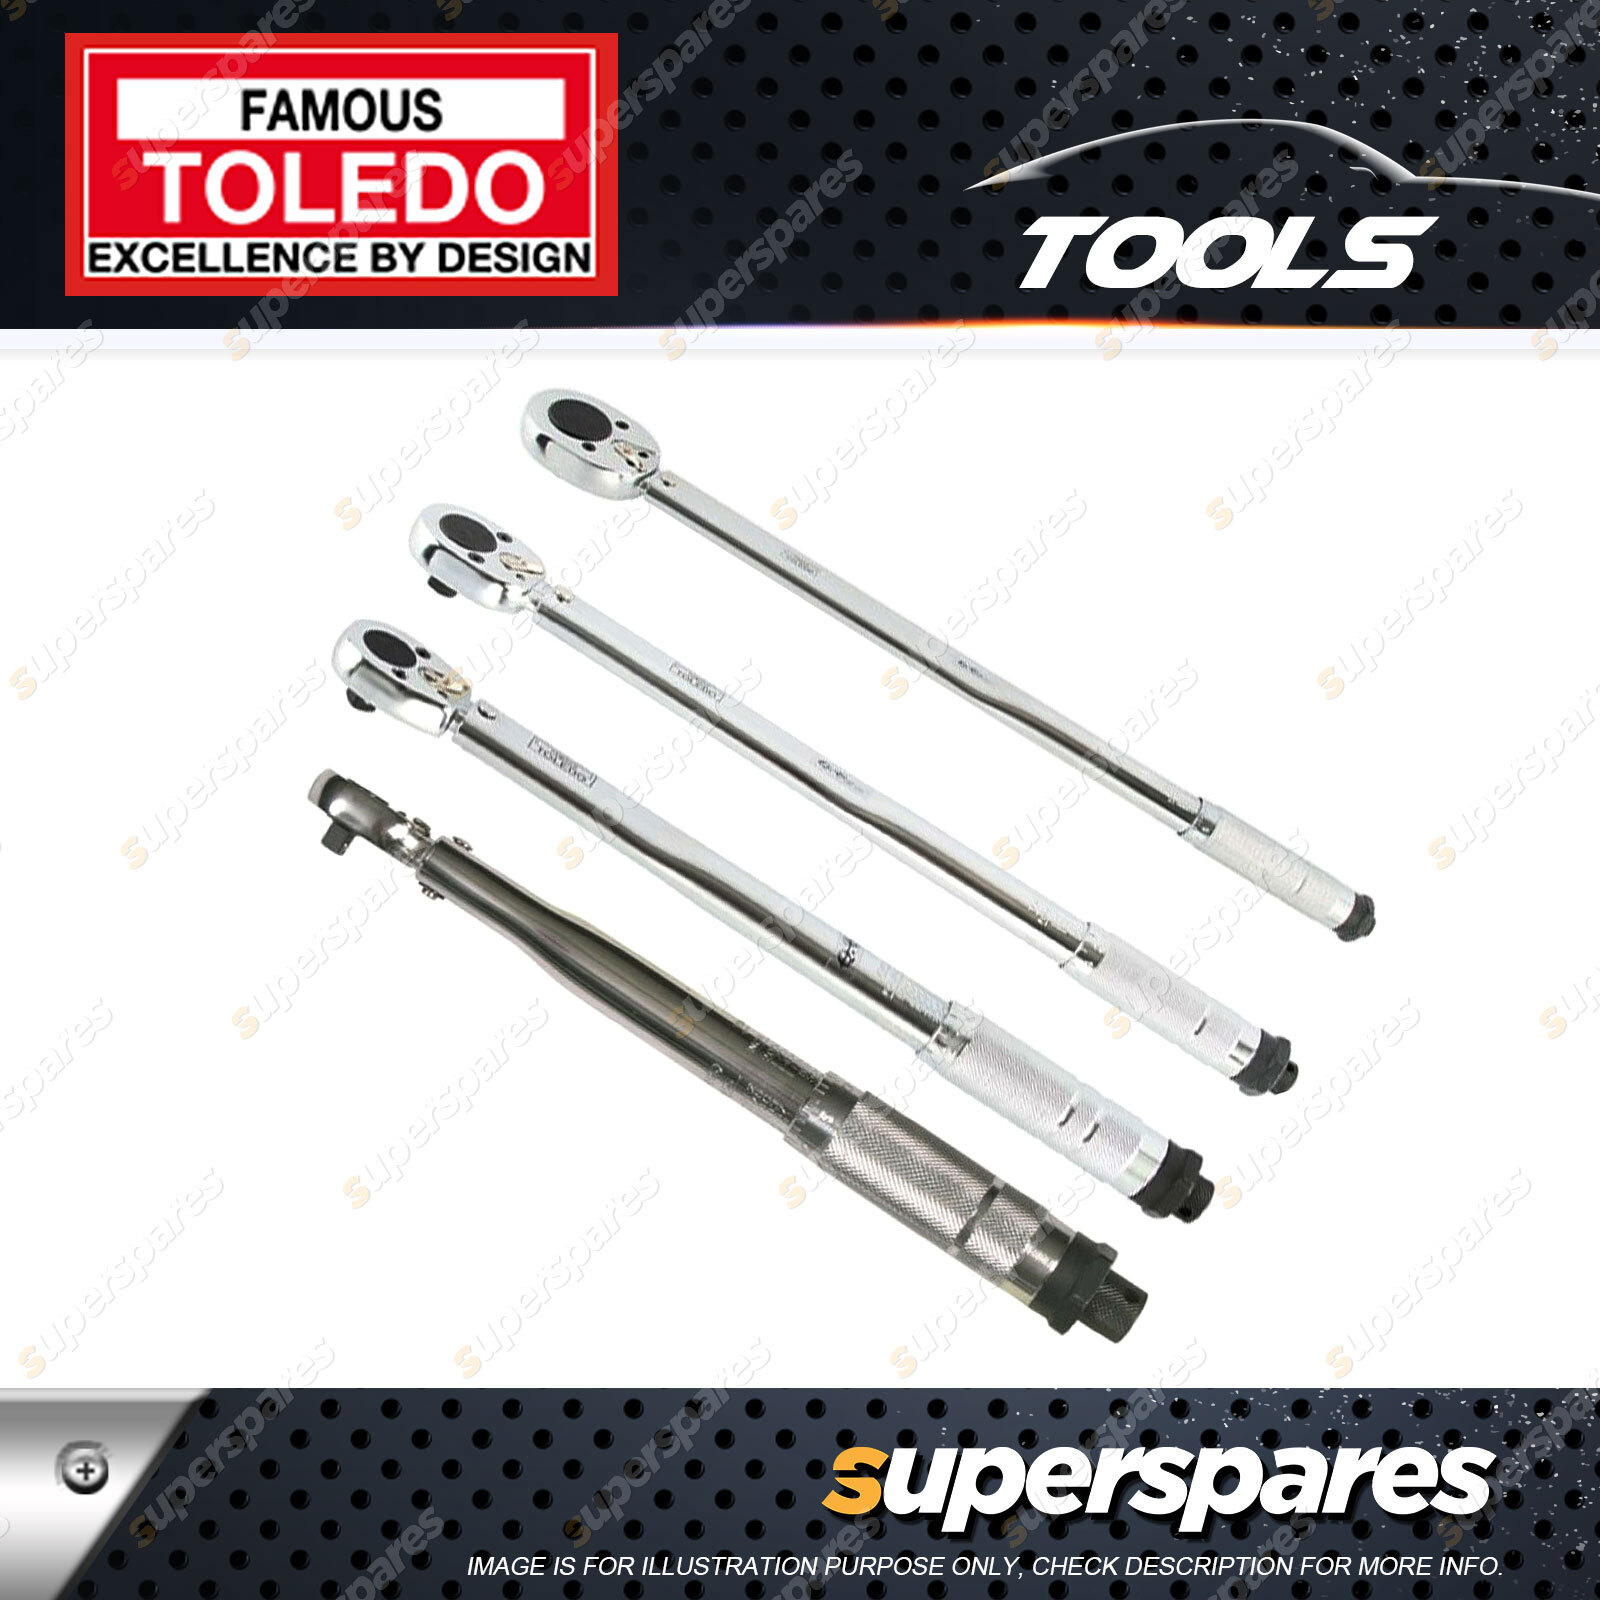 Toledo Torque Wrench 3/8 Drive